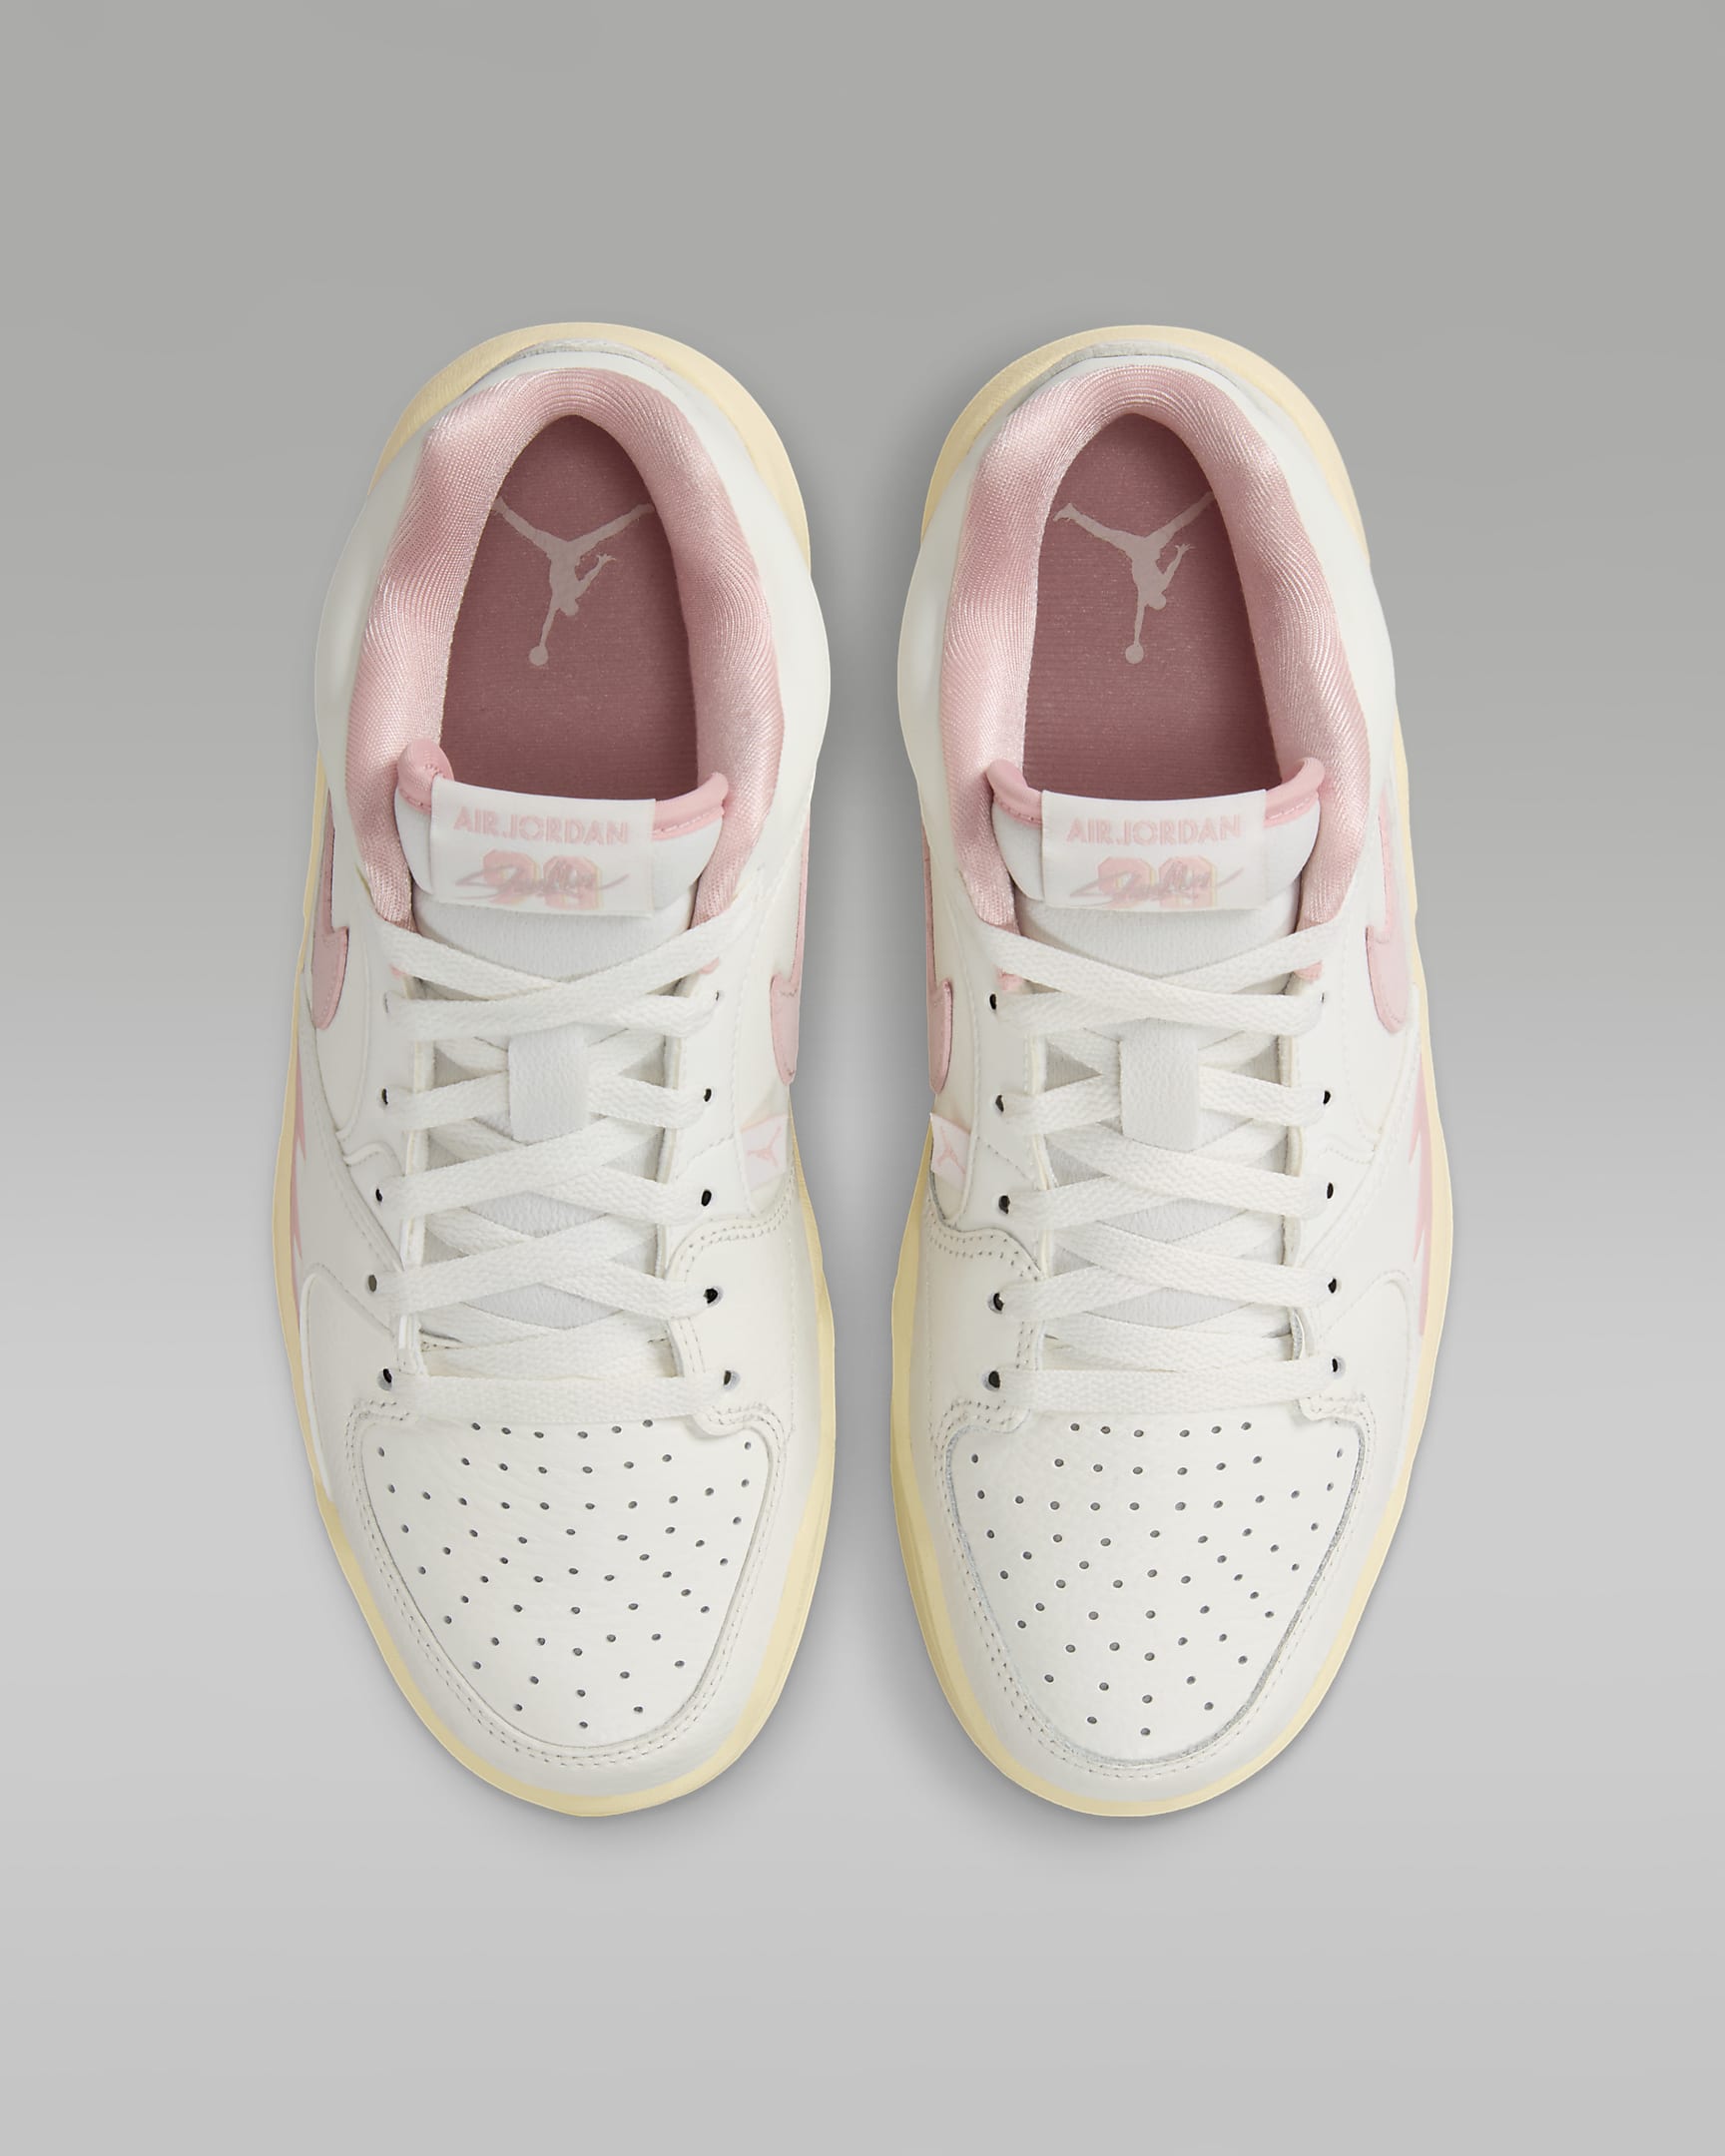 Jordan Stadium 90 Women's Shoes - Sail/Muslin/Neutral Grey/Legend Pink